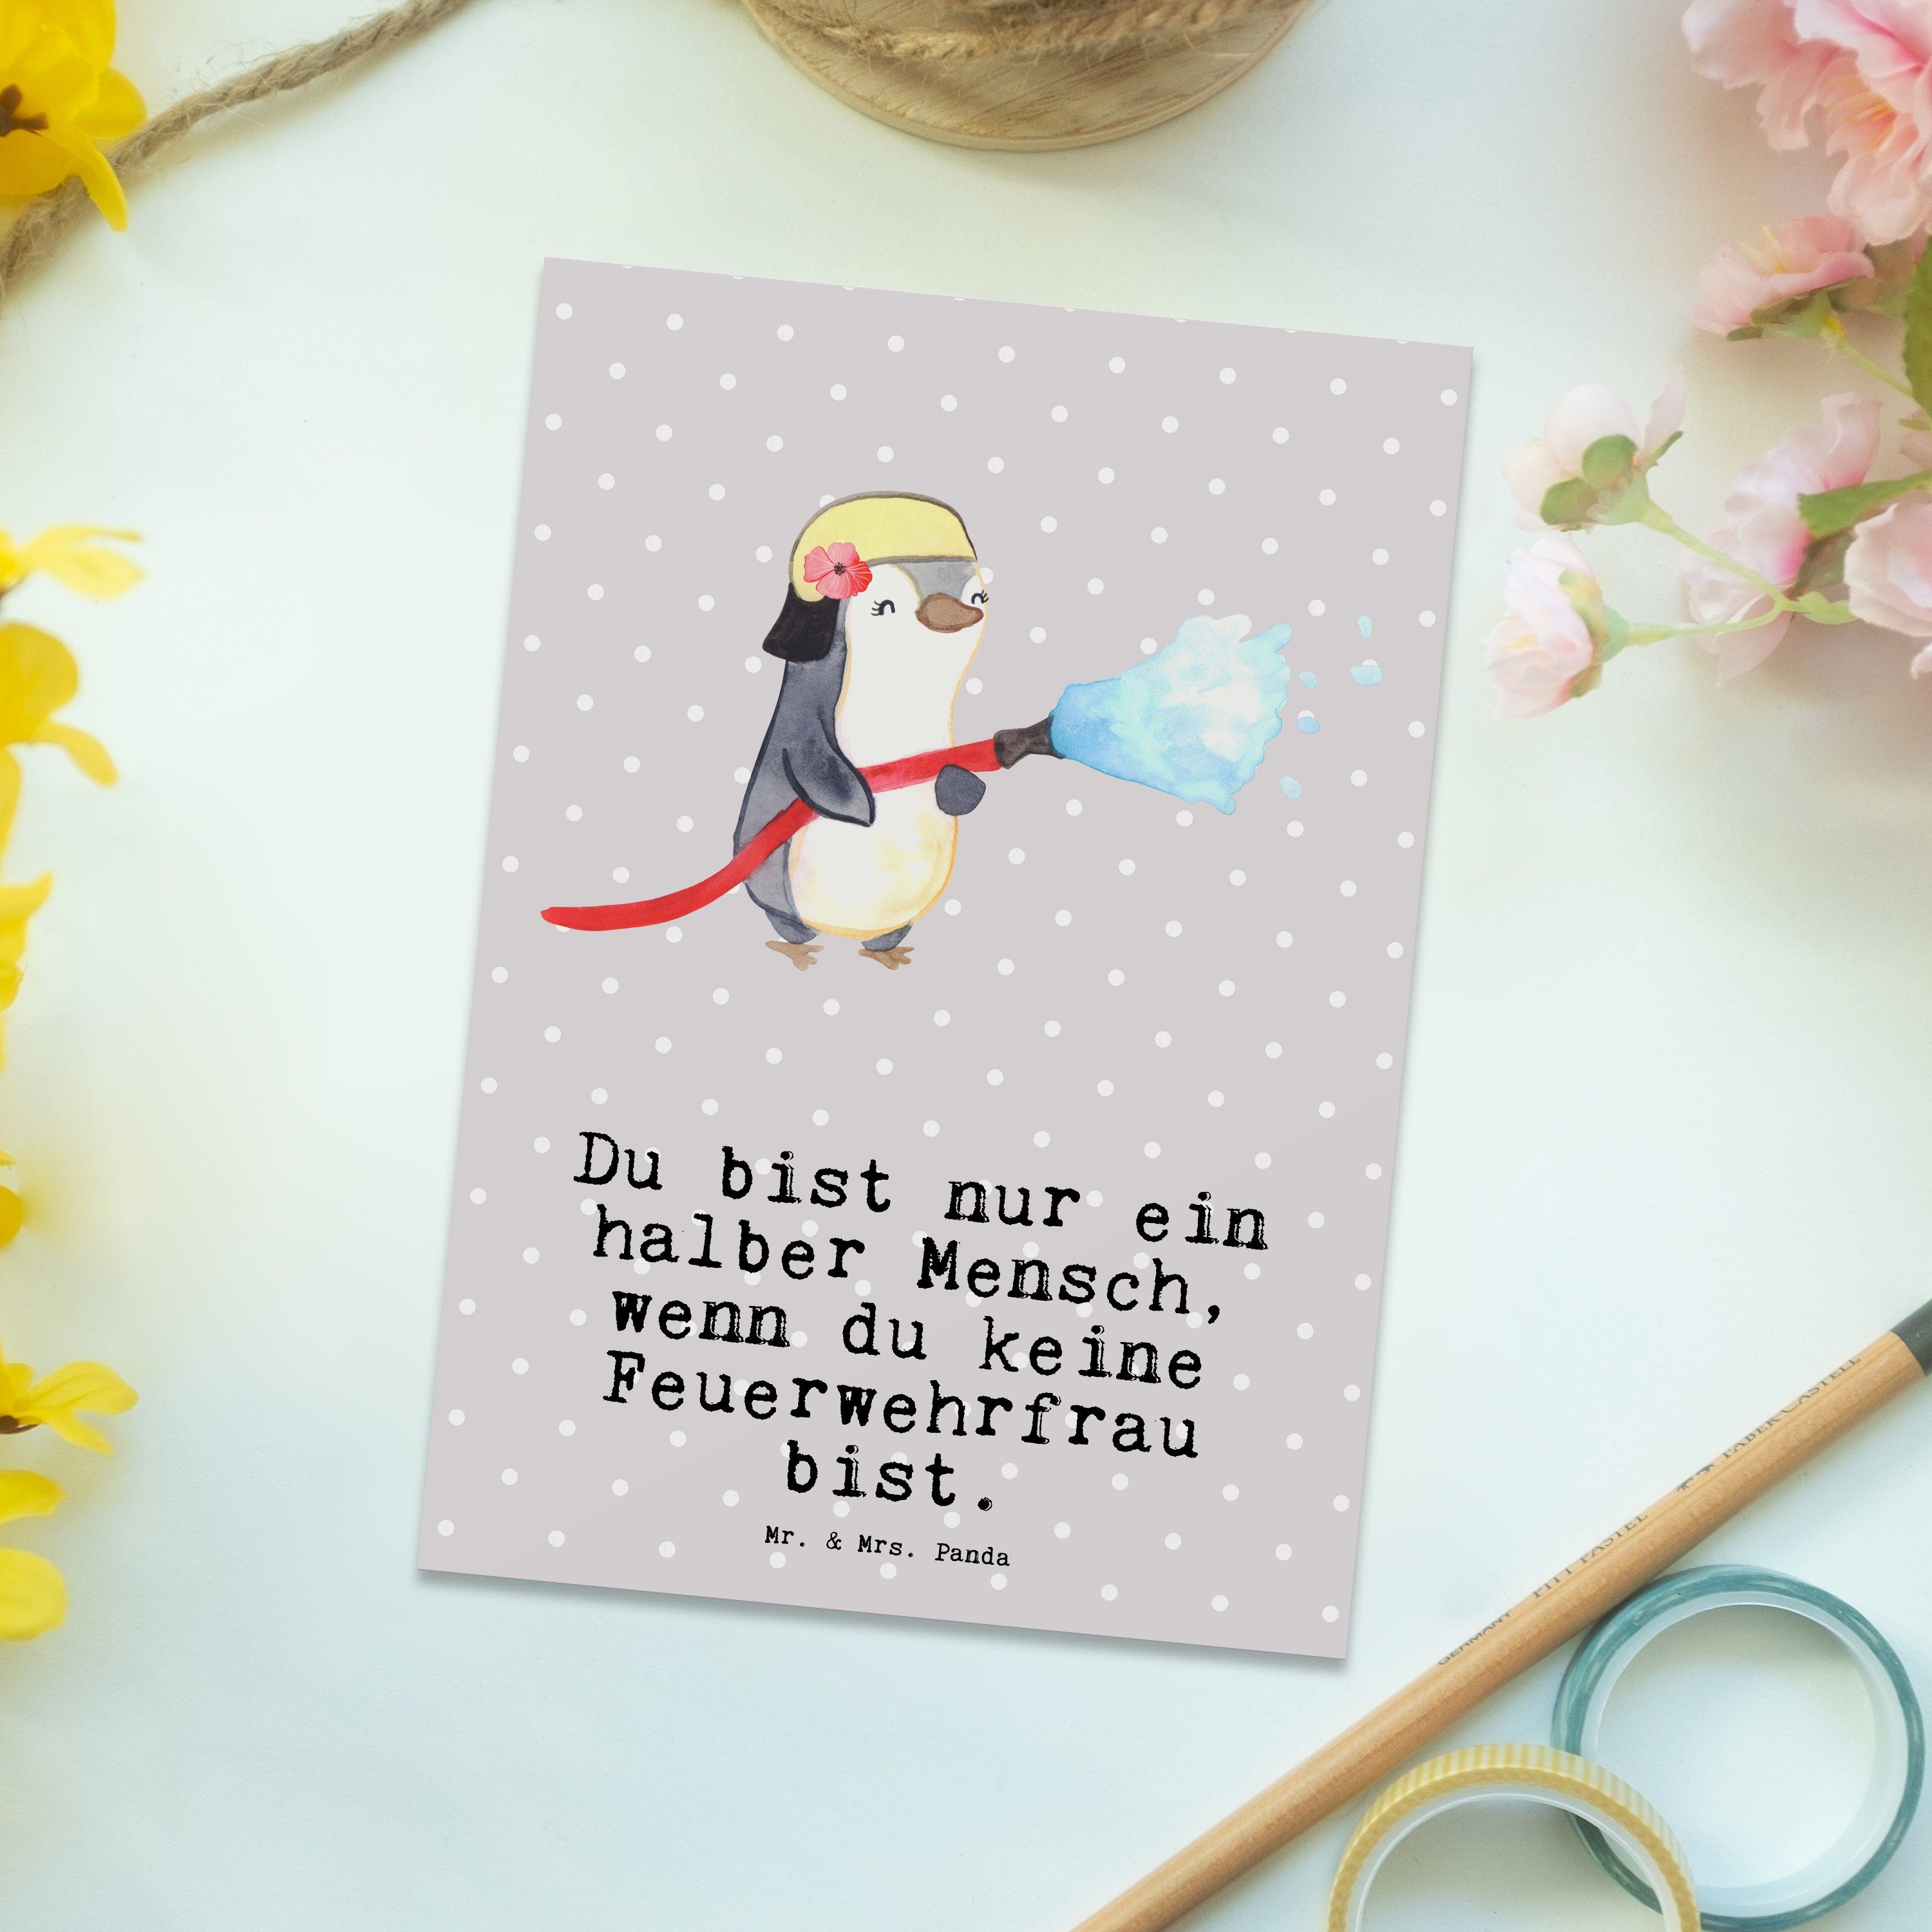 Mr. & Mrs. Panda - Feuerwehrfrau Feuerwehrhauptfrau Pastell mit Postkarte Herz Grau - Geschenk